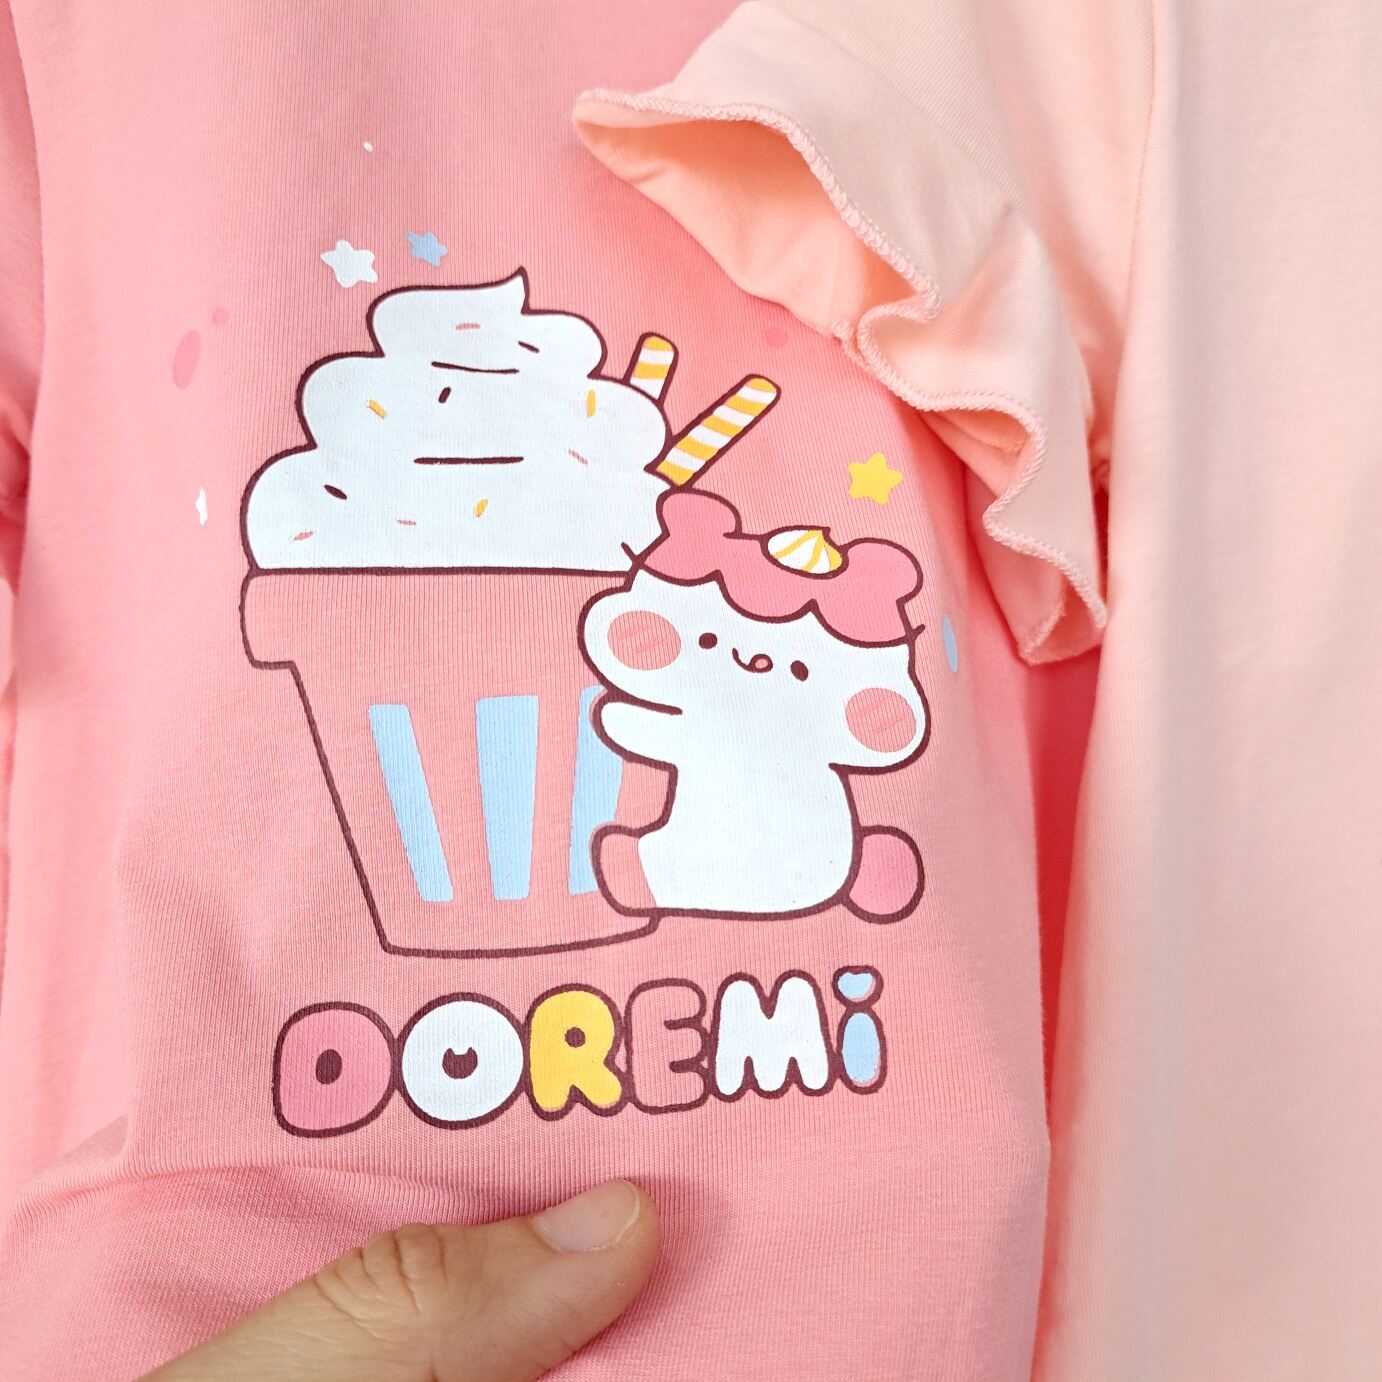 (2-6 tuổi) Áo cộc tay bé gái Dokma - chất cotton Mỹ mềm mát, thoáng khí, co giãn tốt (DA1370)